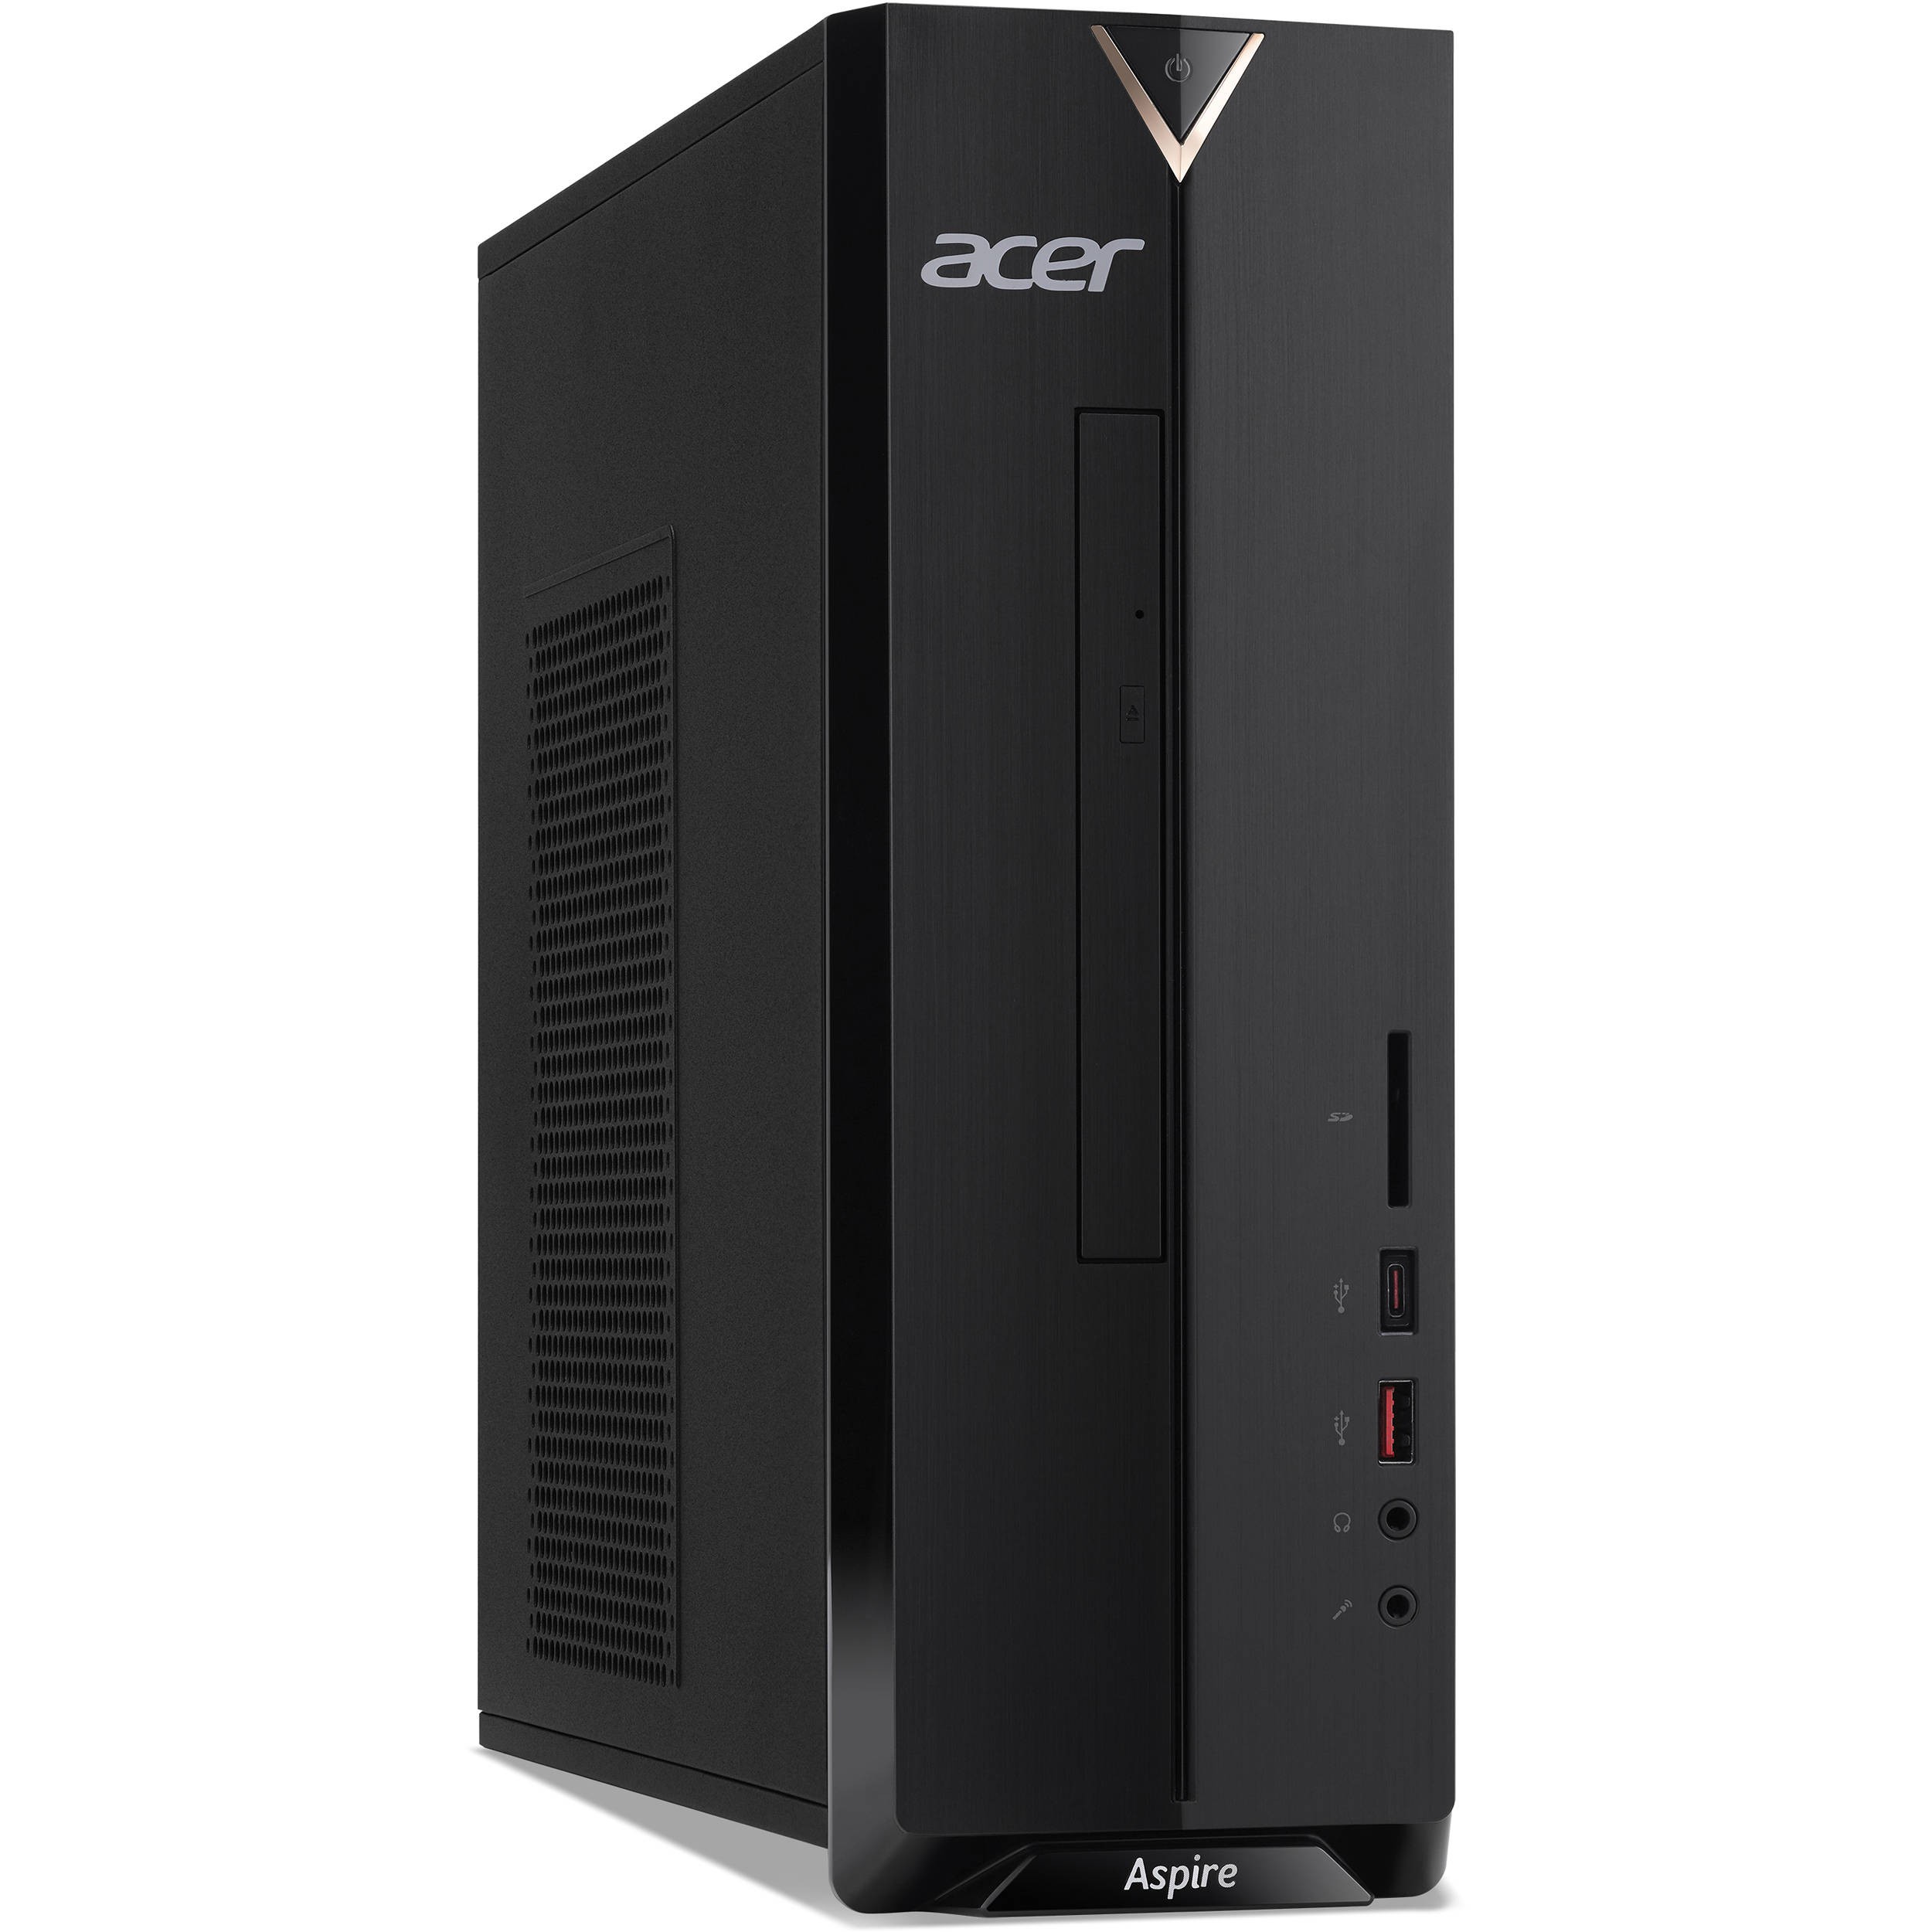 Máy tính để bàn / PC ACER AS XC-885 (i3-8100/4G/1TB) (DT.BAQSV.001)